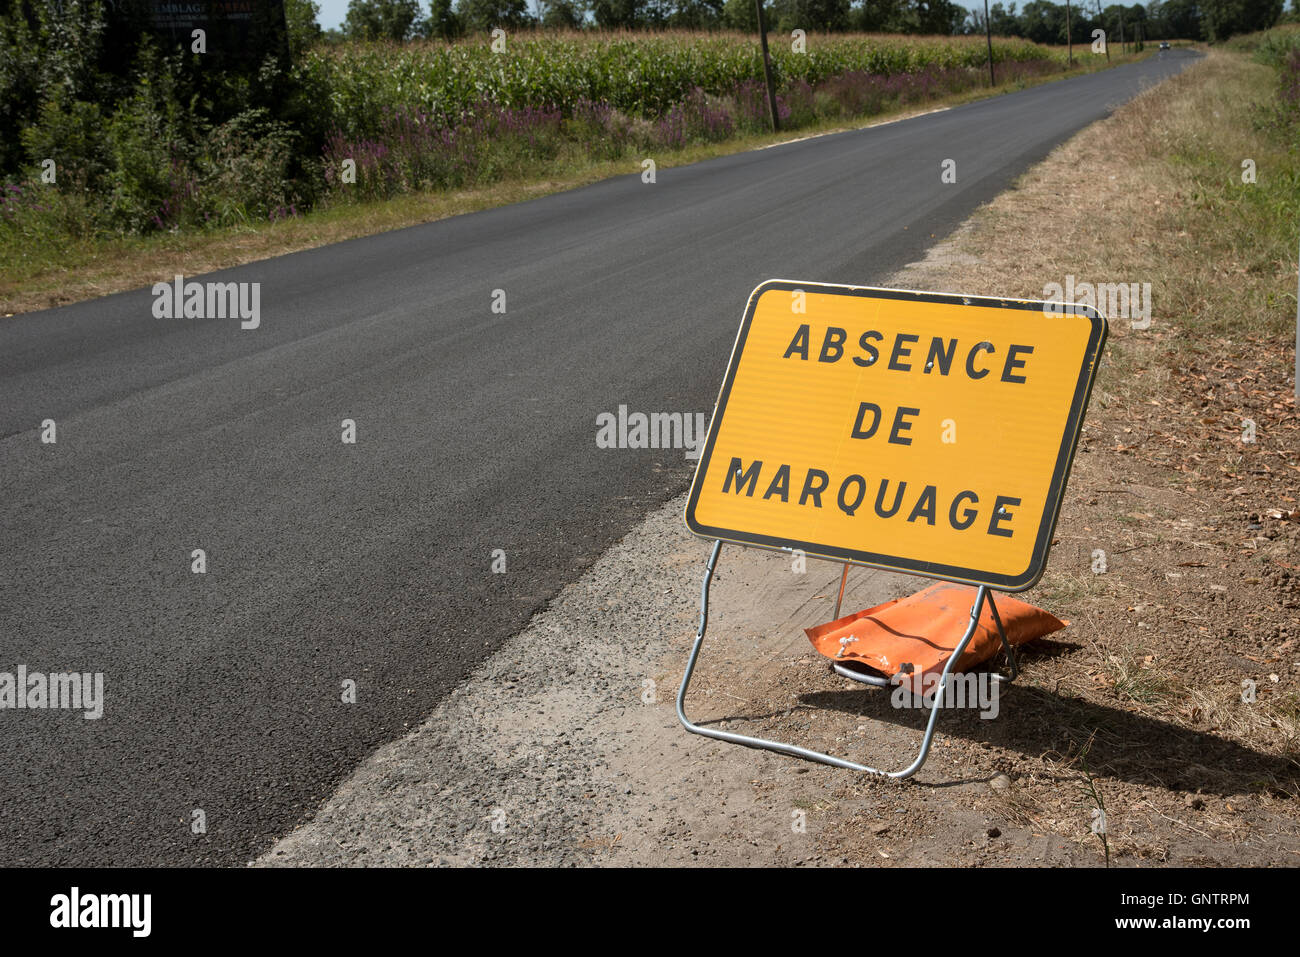 France - Bordeaux Médoc signe routière conseiller les automobilistes il n'y a pas de marquages routiers Banque D'Images